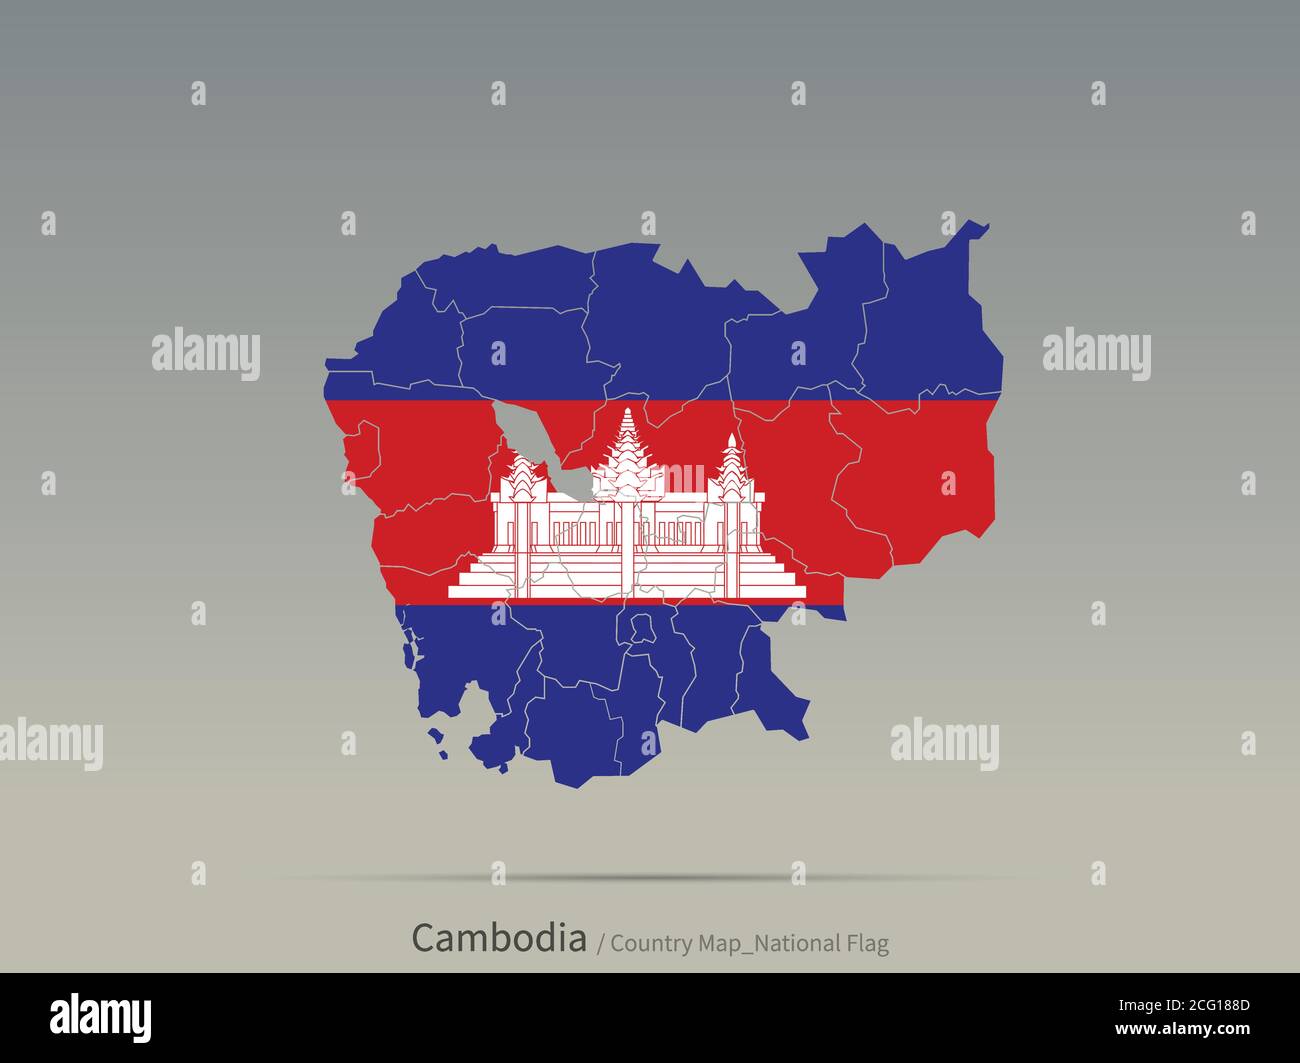 Drapeau du Cambodge isolé sur la carte. Carte et drapeau des pays asiatiques. Illustration de Vecteur